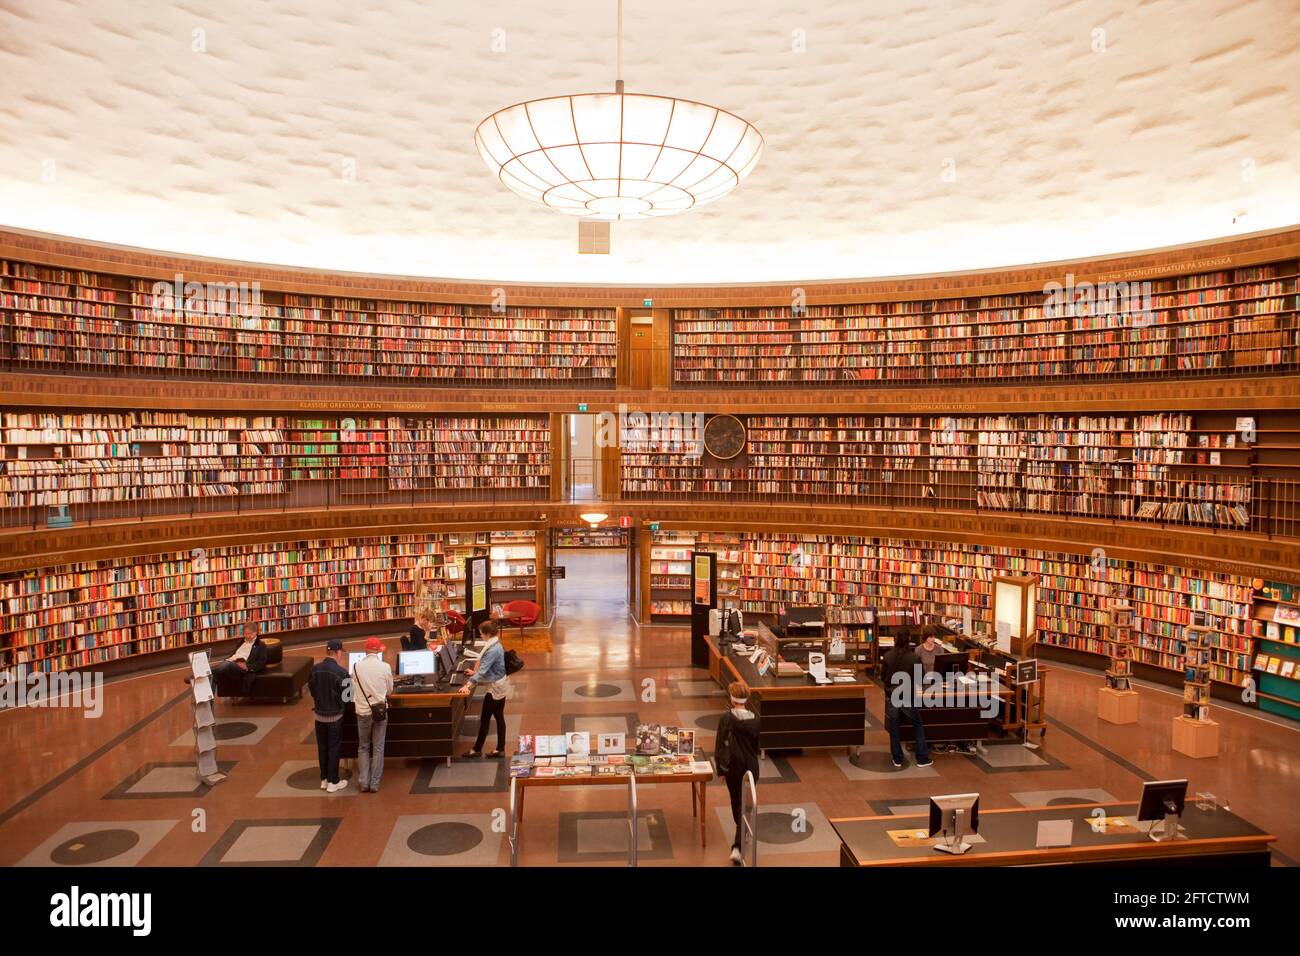 Suède, Stockholm - intérieur de la bibliothèque de la ville de Stockholm. Banque D'Images